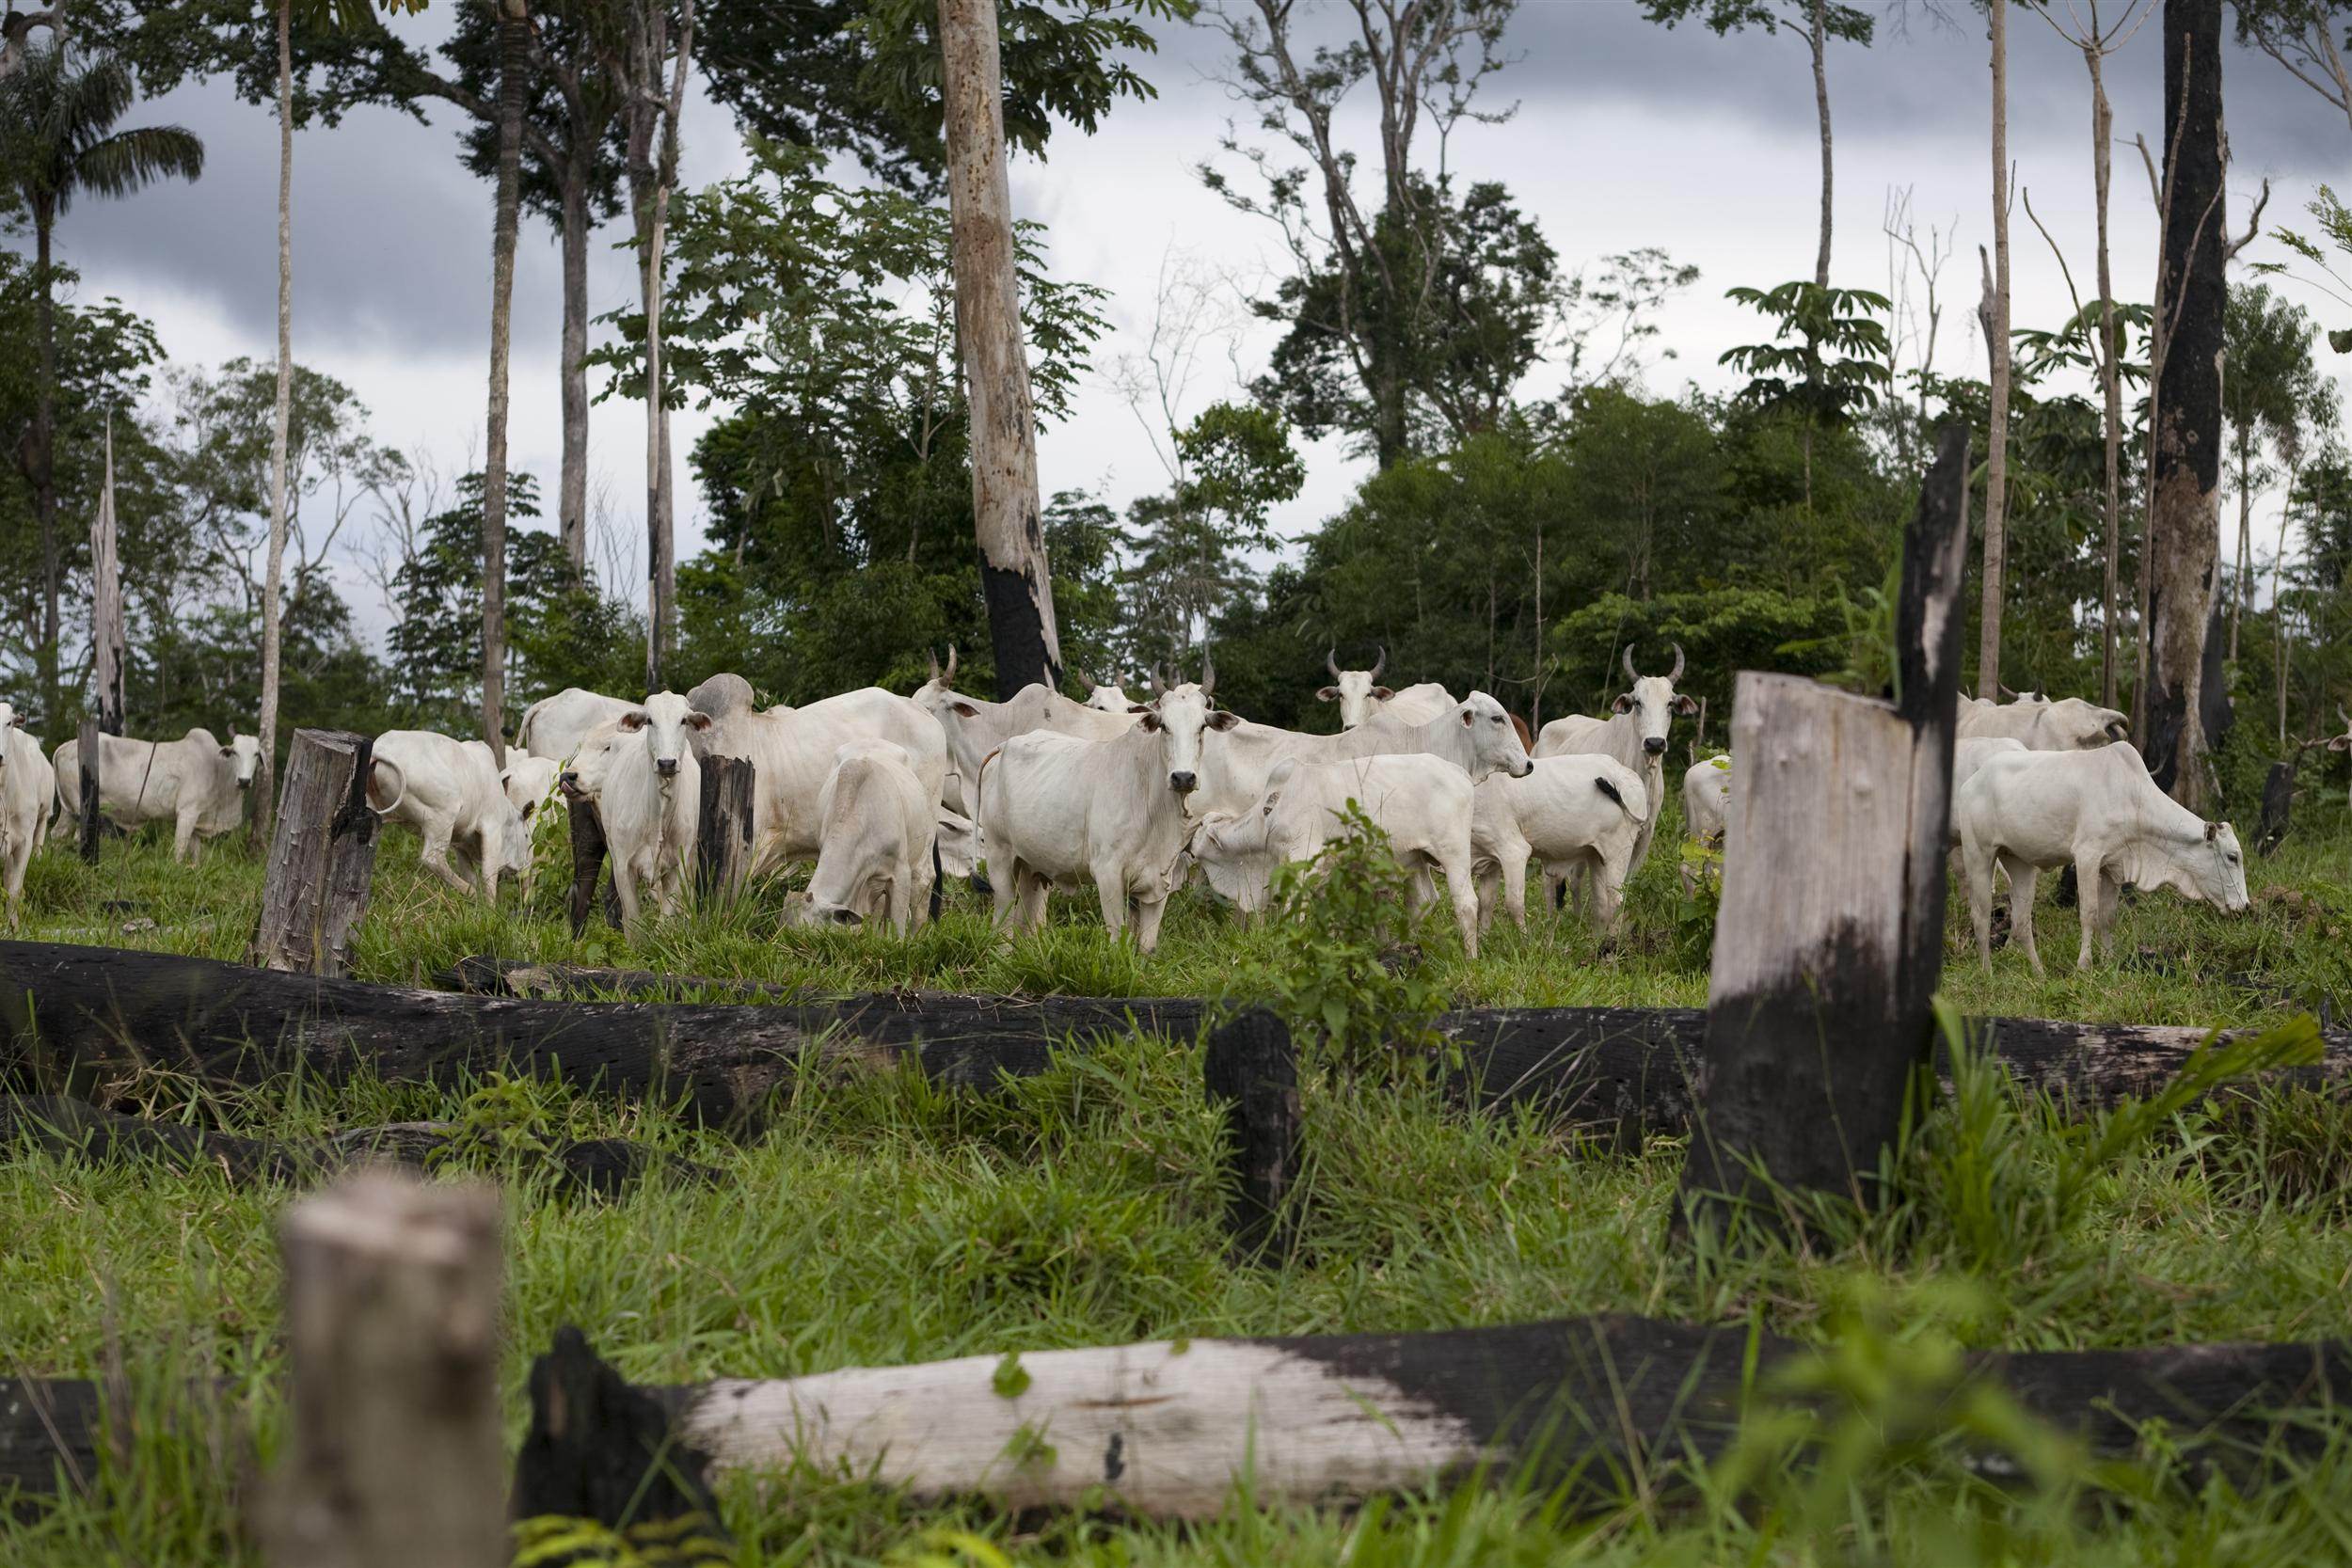 Brésil : Greenpeace suspend ses négociations avec le géant du bétail JBS